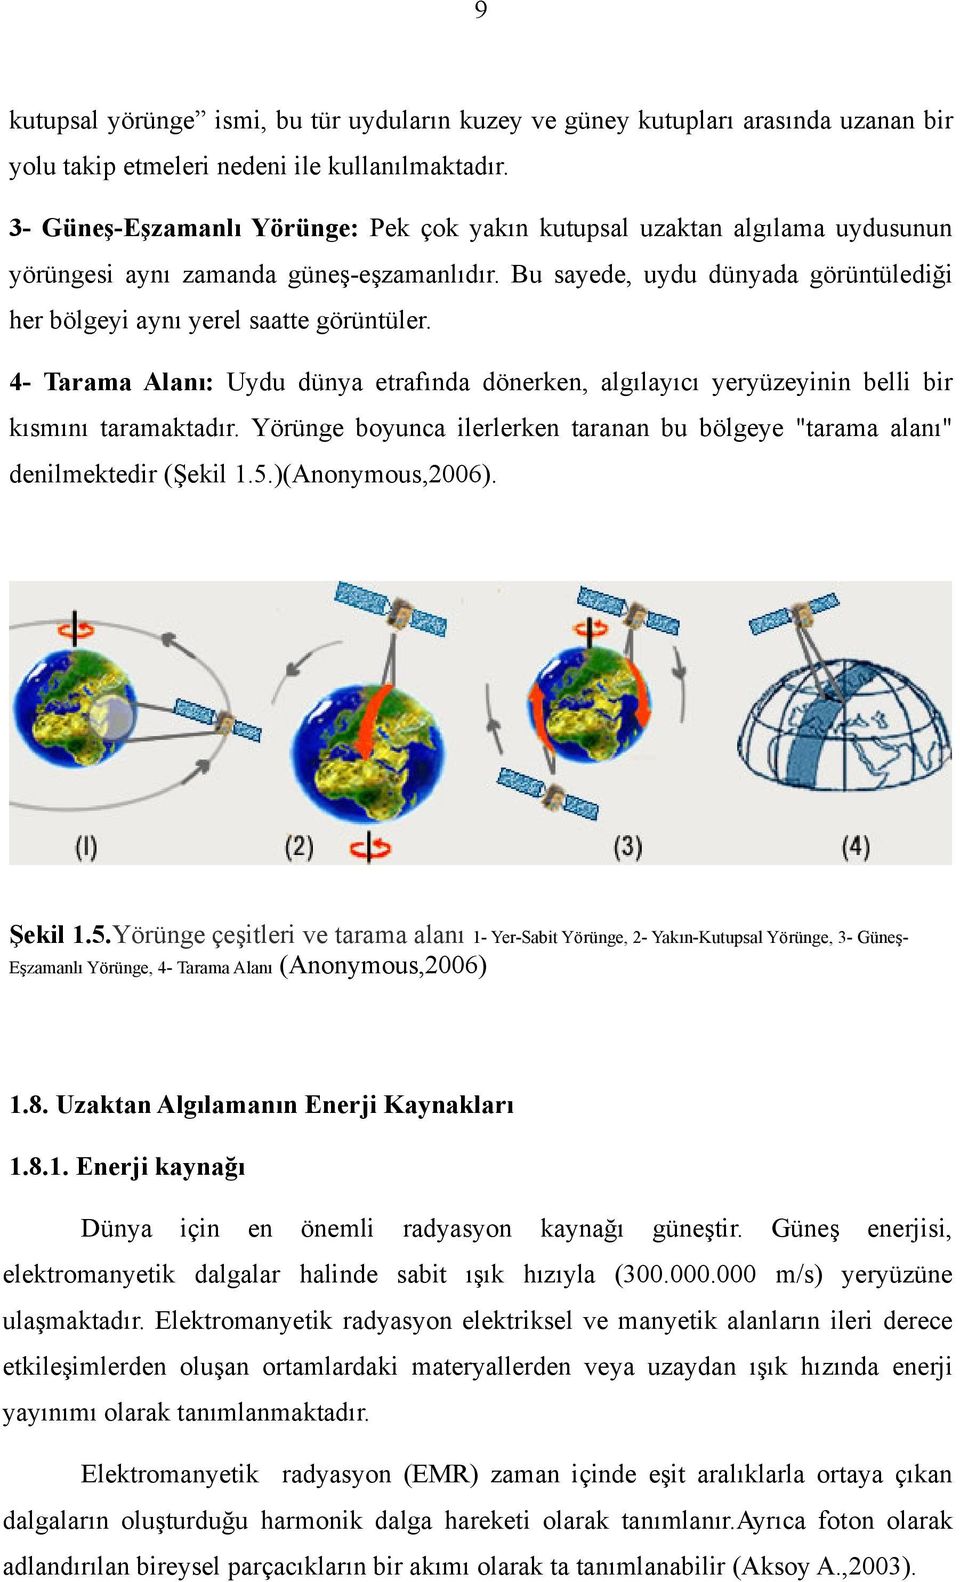 4- Tarama Alanı: Uydu dünya etrafında dönerken, algılayıcı yeryüzeyinin belli bir kısmını taramaktadır. Yörünge boyunca ilerlerken taranan bu bölgeye "tarama alanı" denilmektedir (Şekil 1.5.